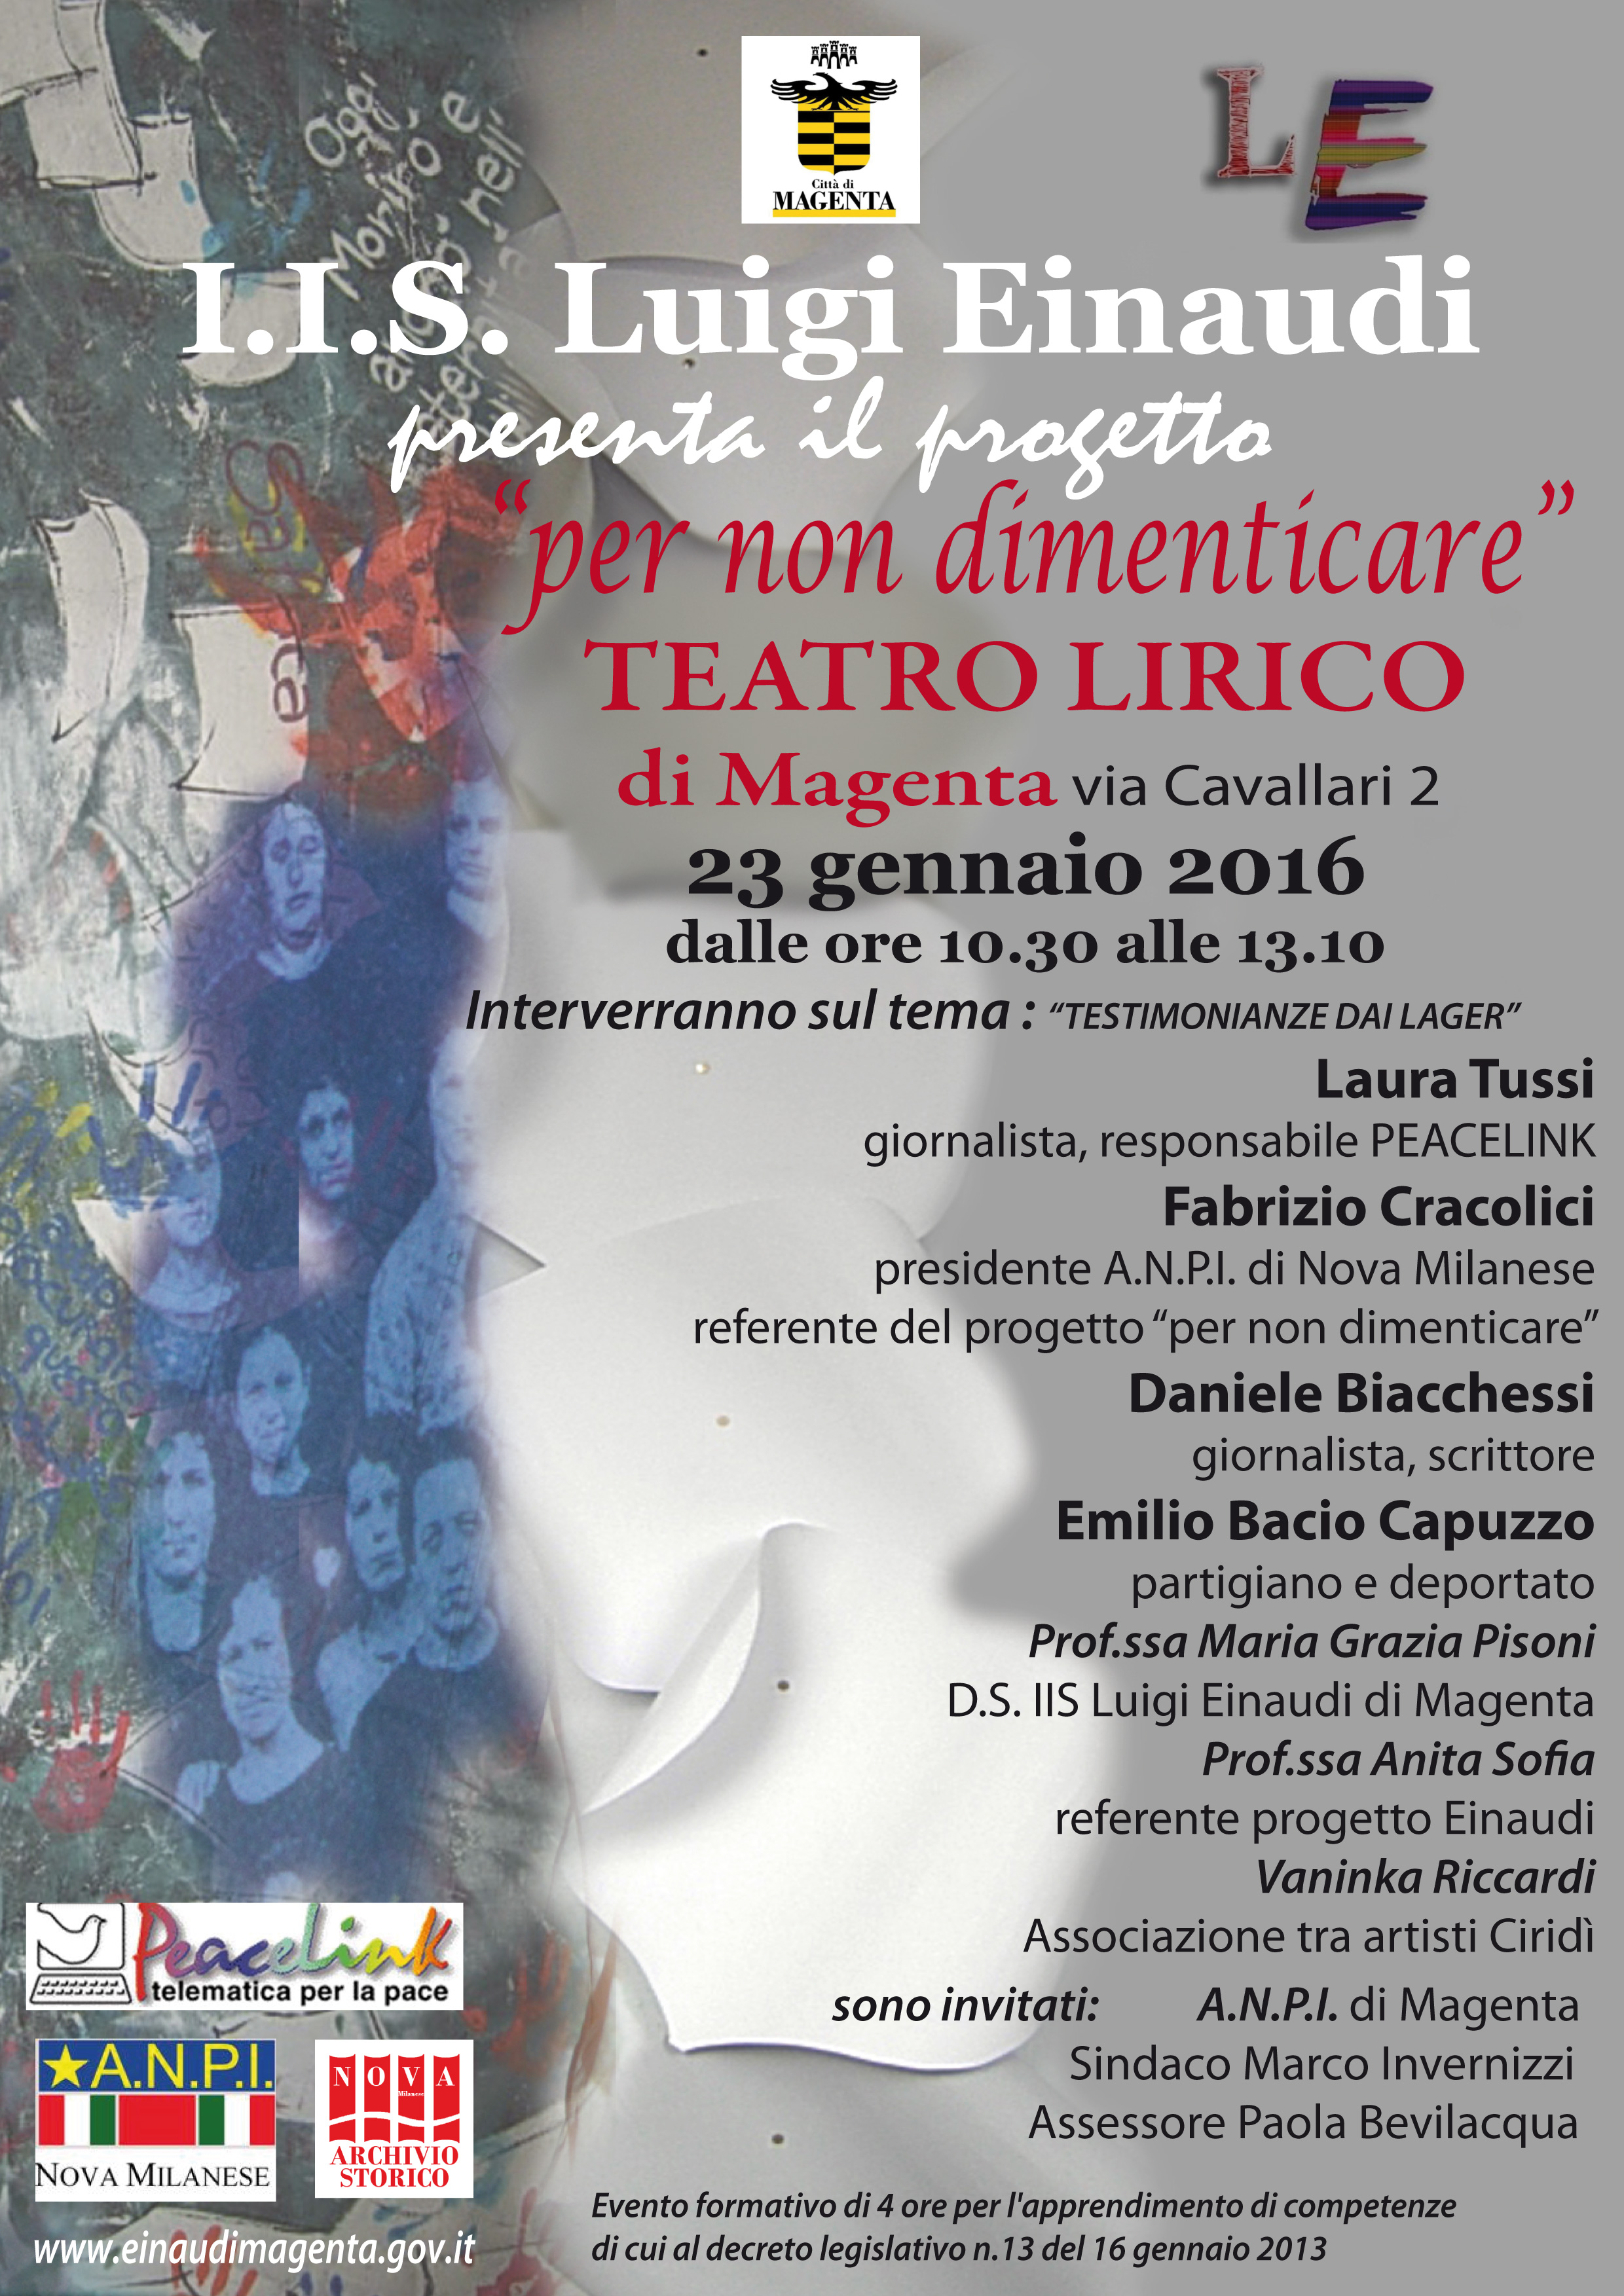 Giorno della Memoria 2016 al Teatro Lirico di Magenta